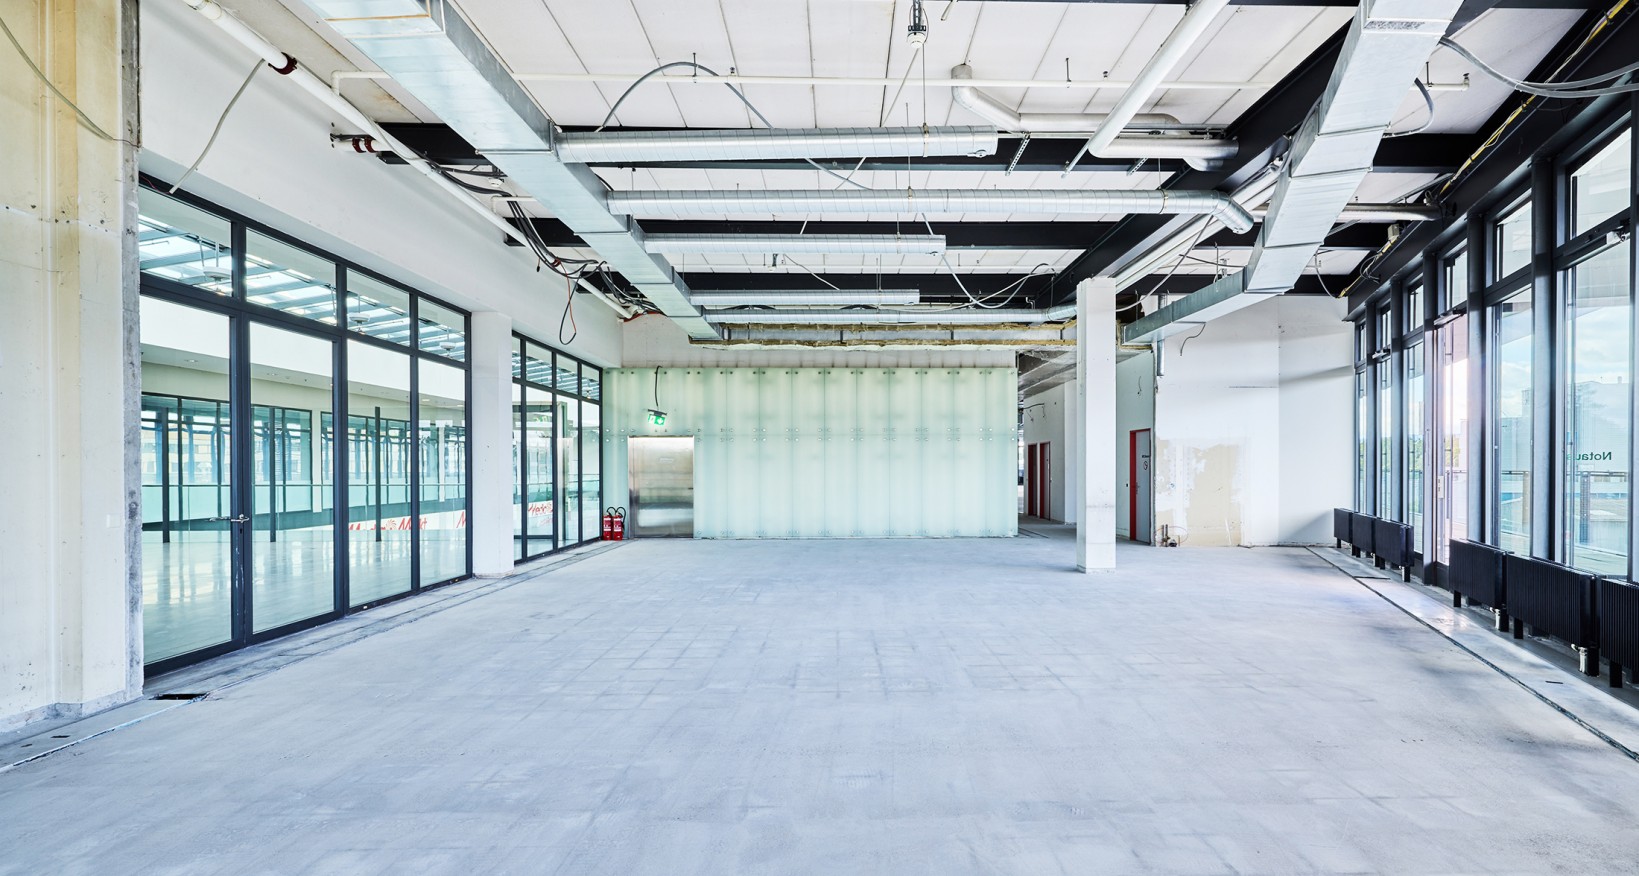 An zentraler Lage im Brandbachcenter Dietikon vermieten wir verschiedene helle Büroräumlich- keiten von 430 m2 bis 1021 m2.